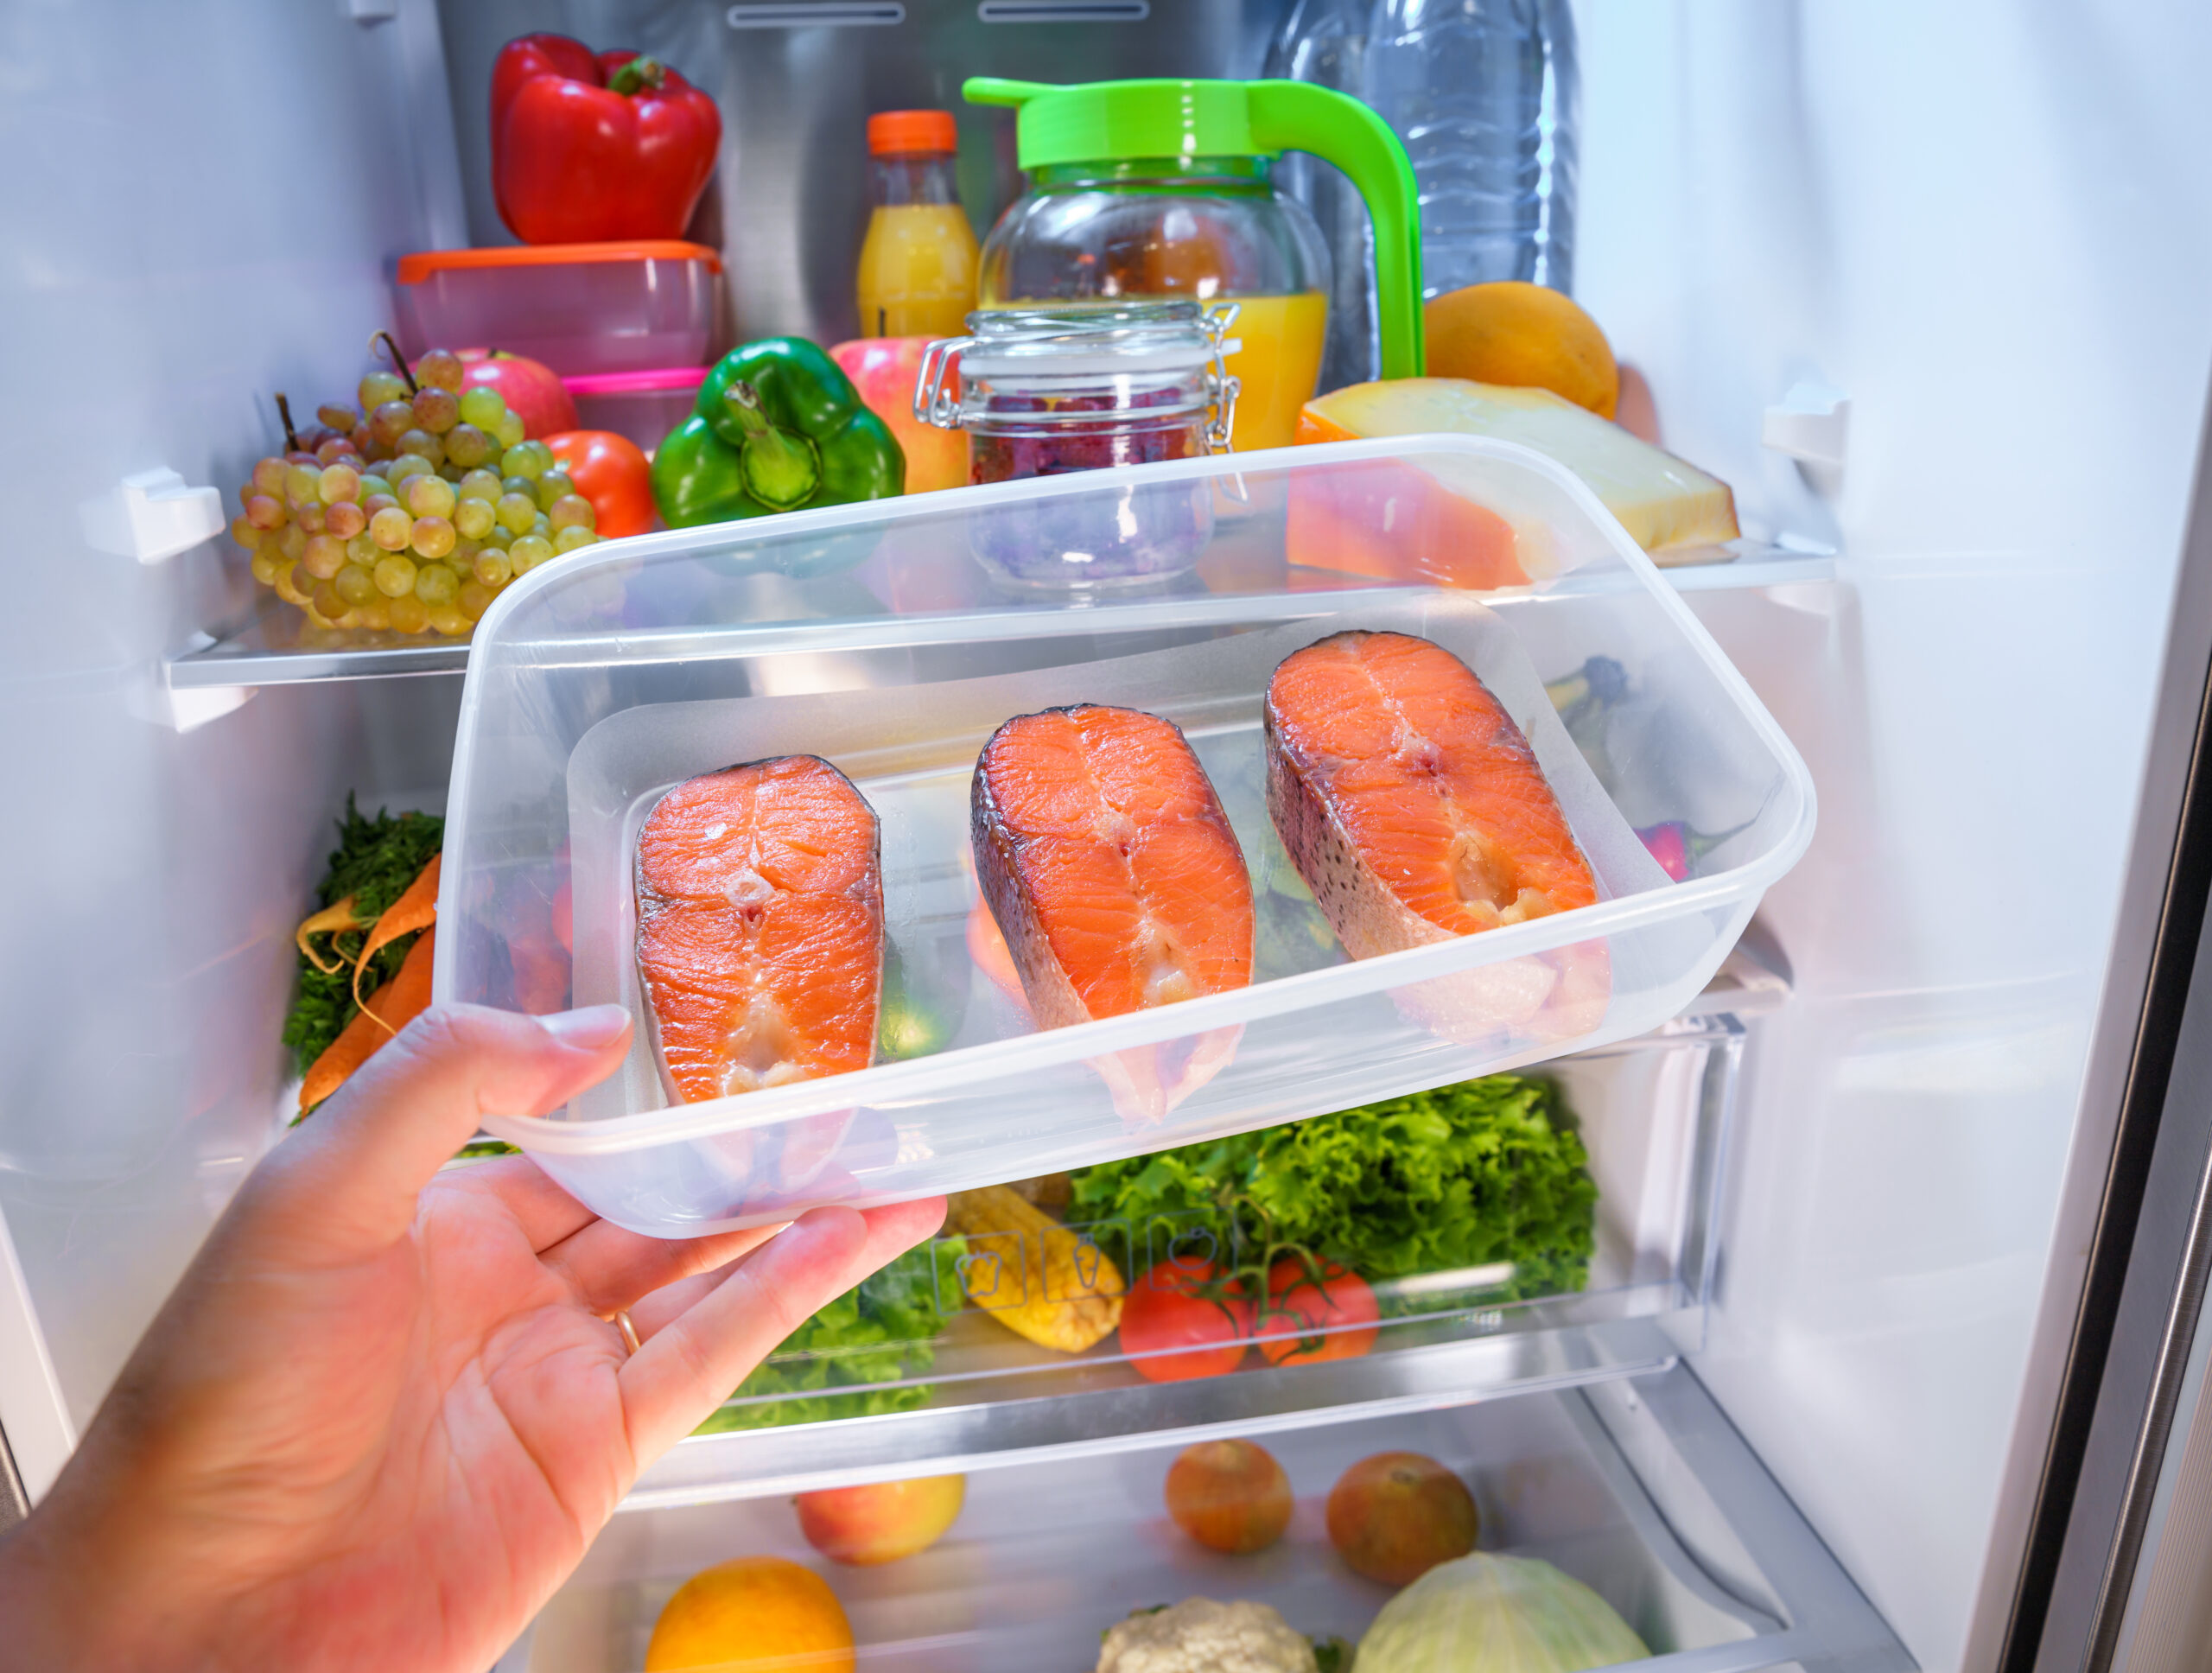 Хранение готовой пищи. Холодильник с продуктами. Хранение продуктов. Холодильник с едой. Хранение готовых блюд в холодильнике.